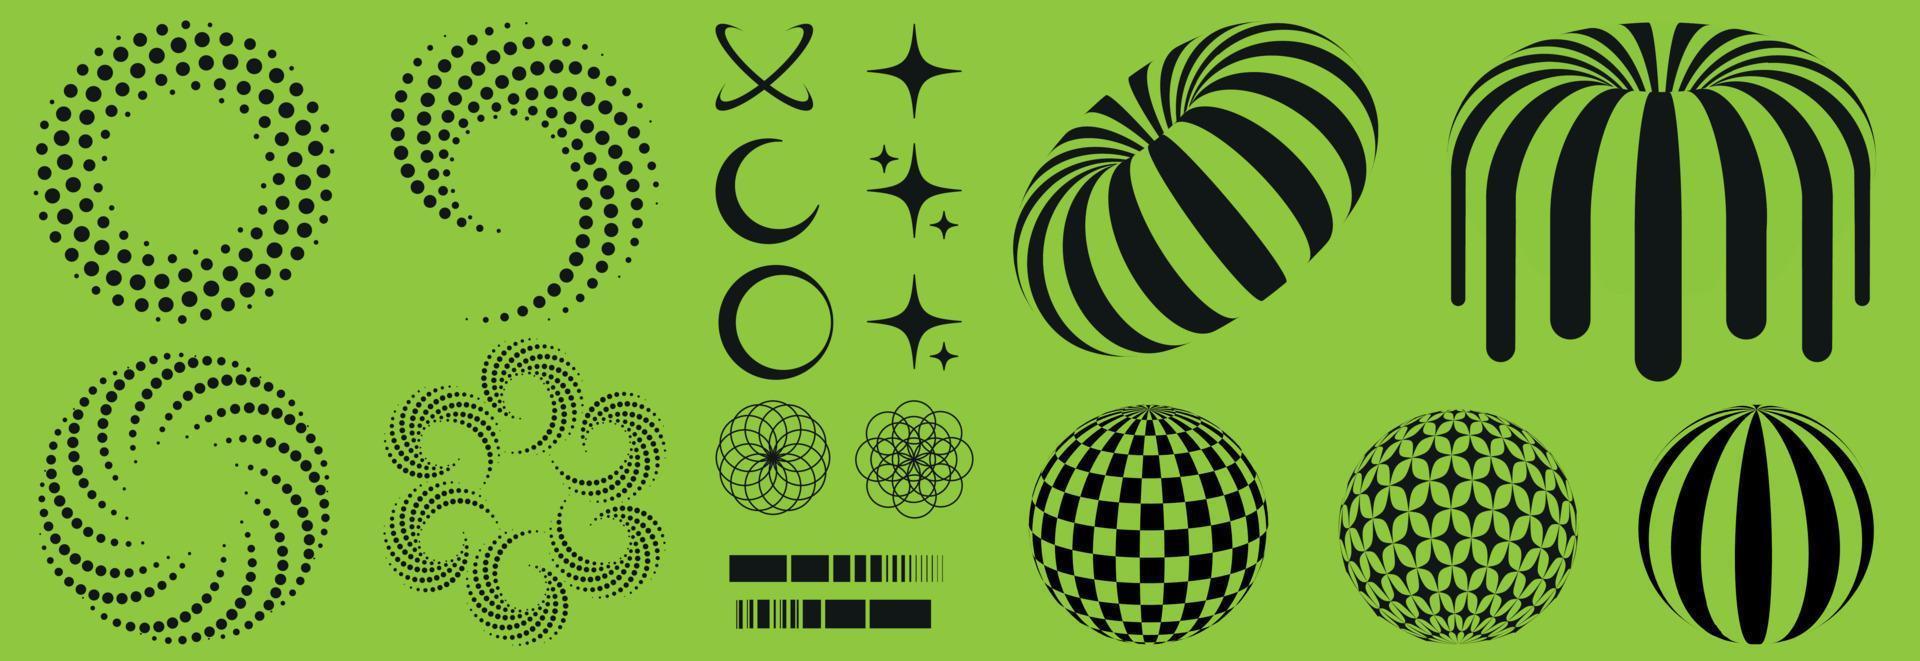 syra psychedelic retro uppsättning i trendig 90s stil. overkligt geometrisk former cirklar, munkar, stjärnor, bollar, jorden, zebra. vektor